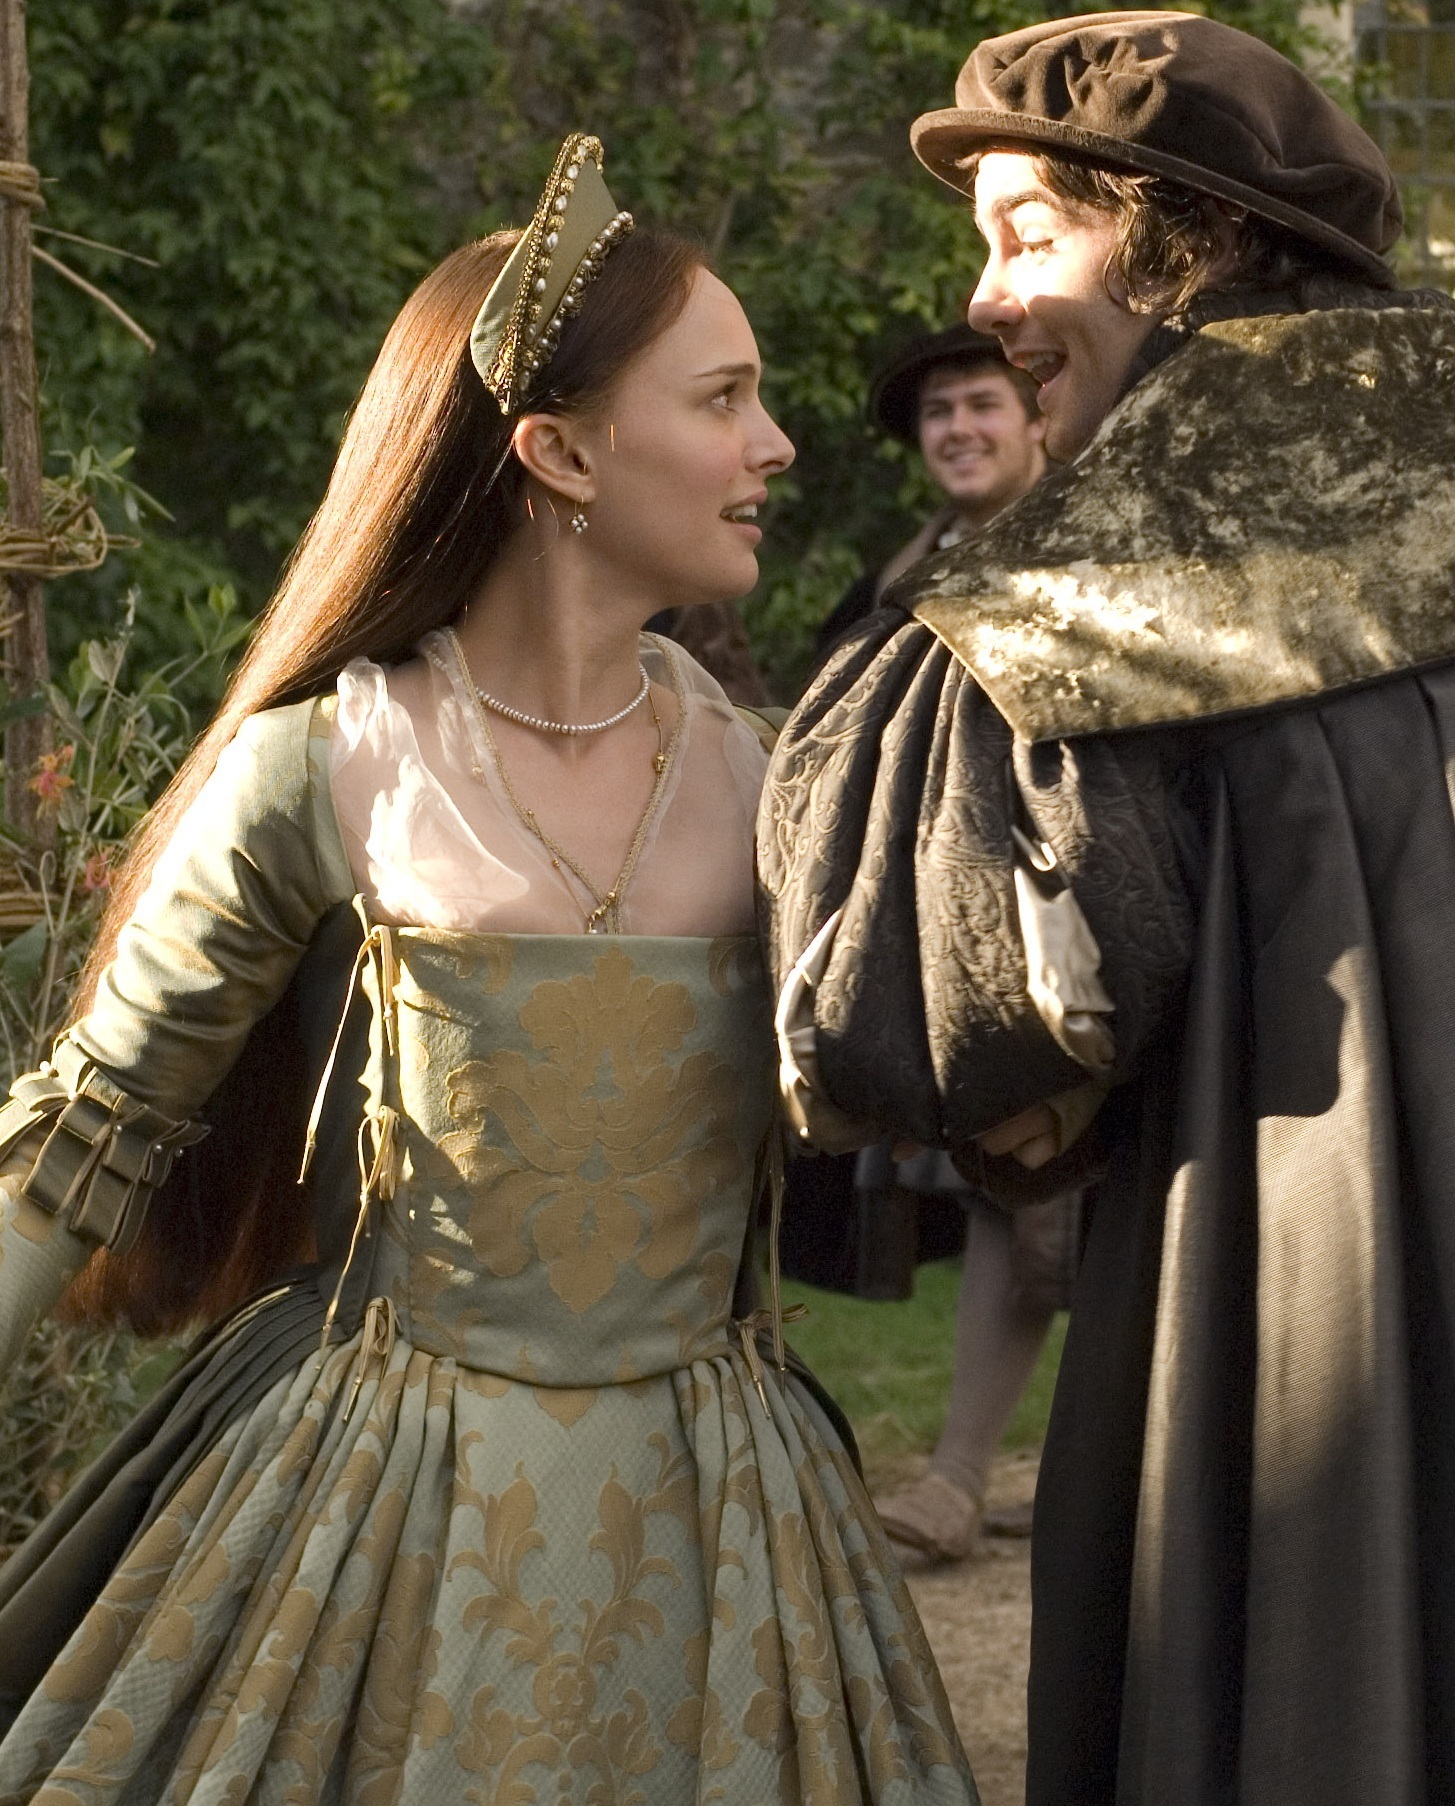 The Other Boleyn Girl | The other boleyn girl, Tudor costumes, Anne boleyn George Boleyn Tudors